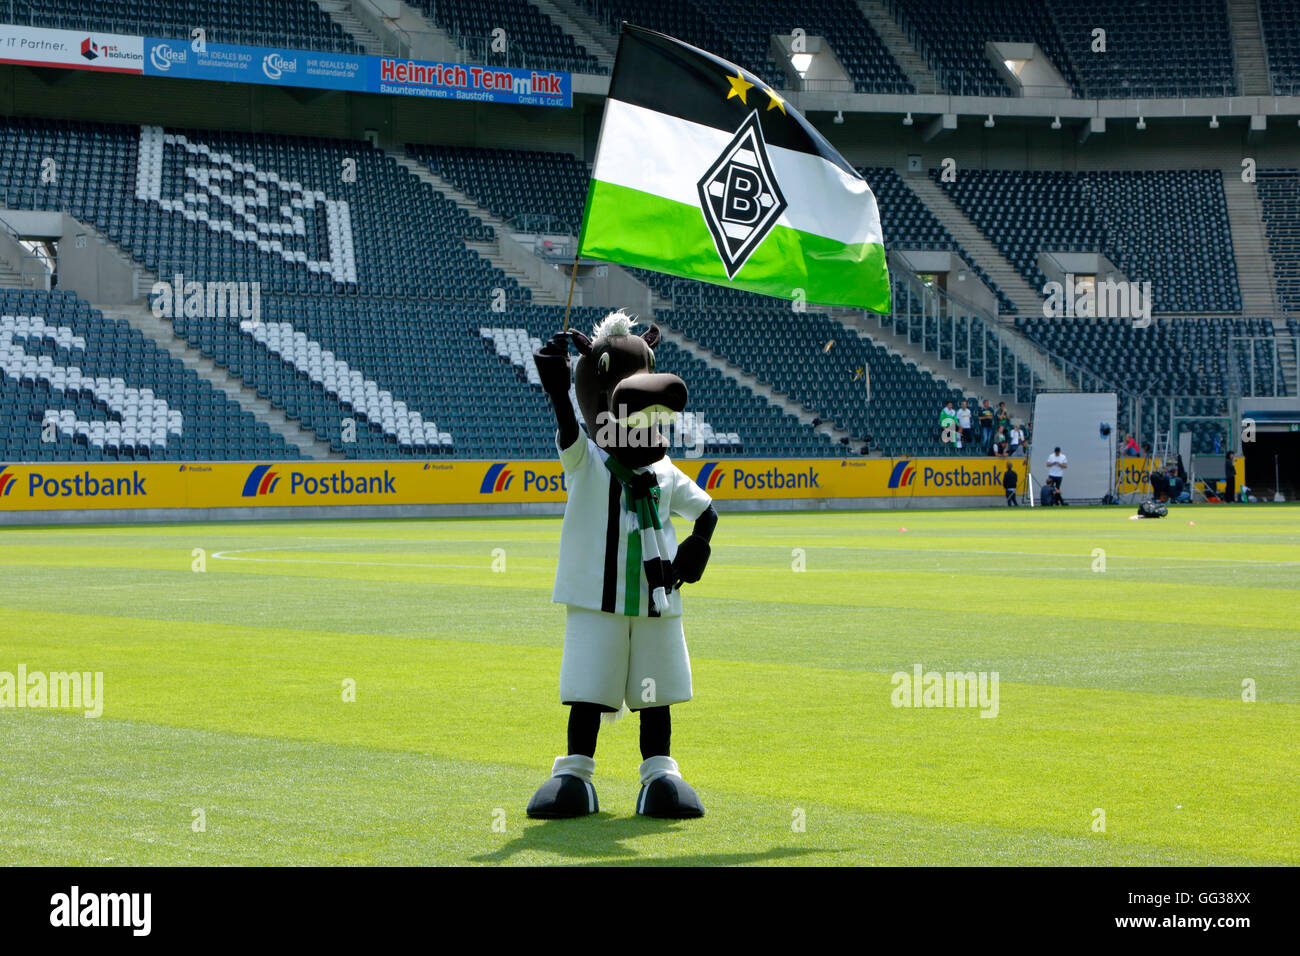 Calcio, Bundesliga, 2016/2017, Borussia Moenchengladbach, stadio Borussia Park, mascotte Juenter con la bandiera del club Foto Stock